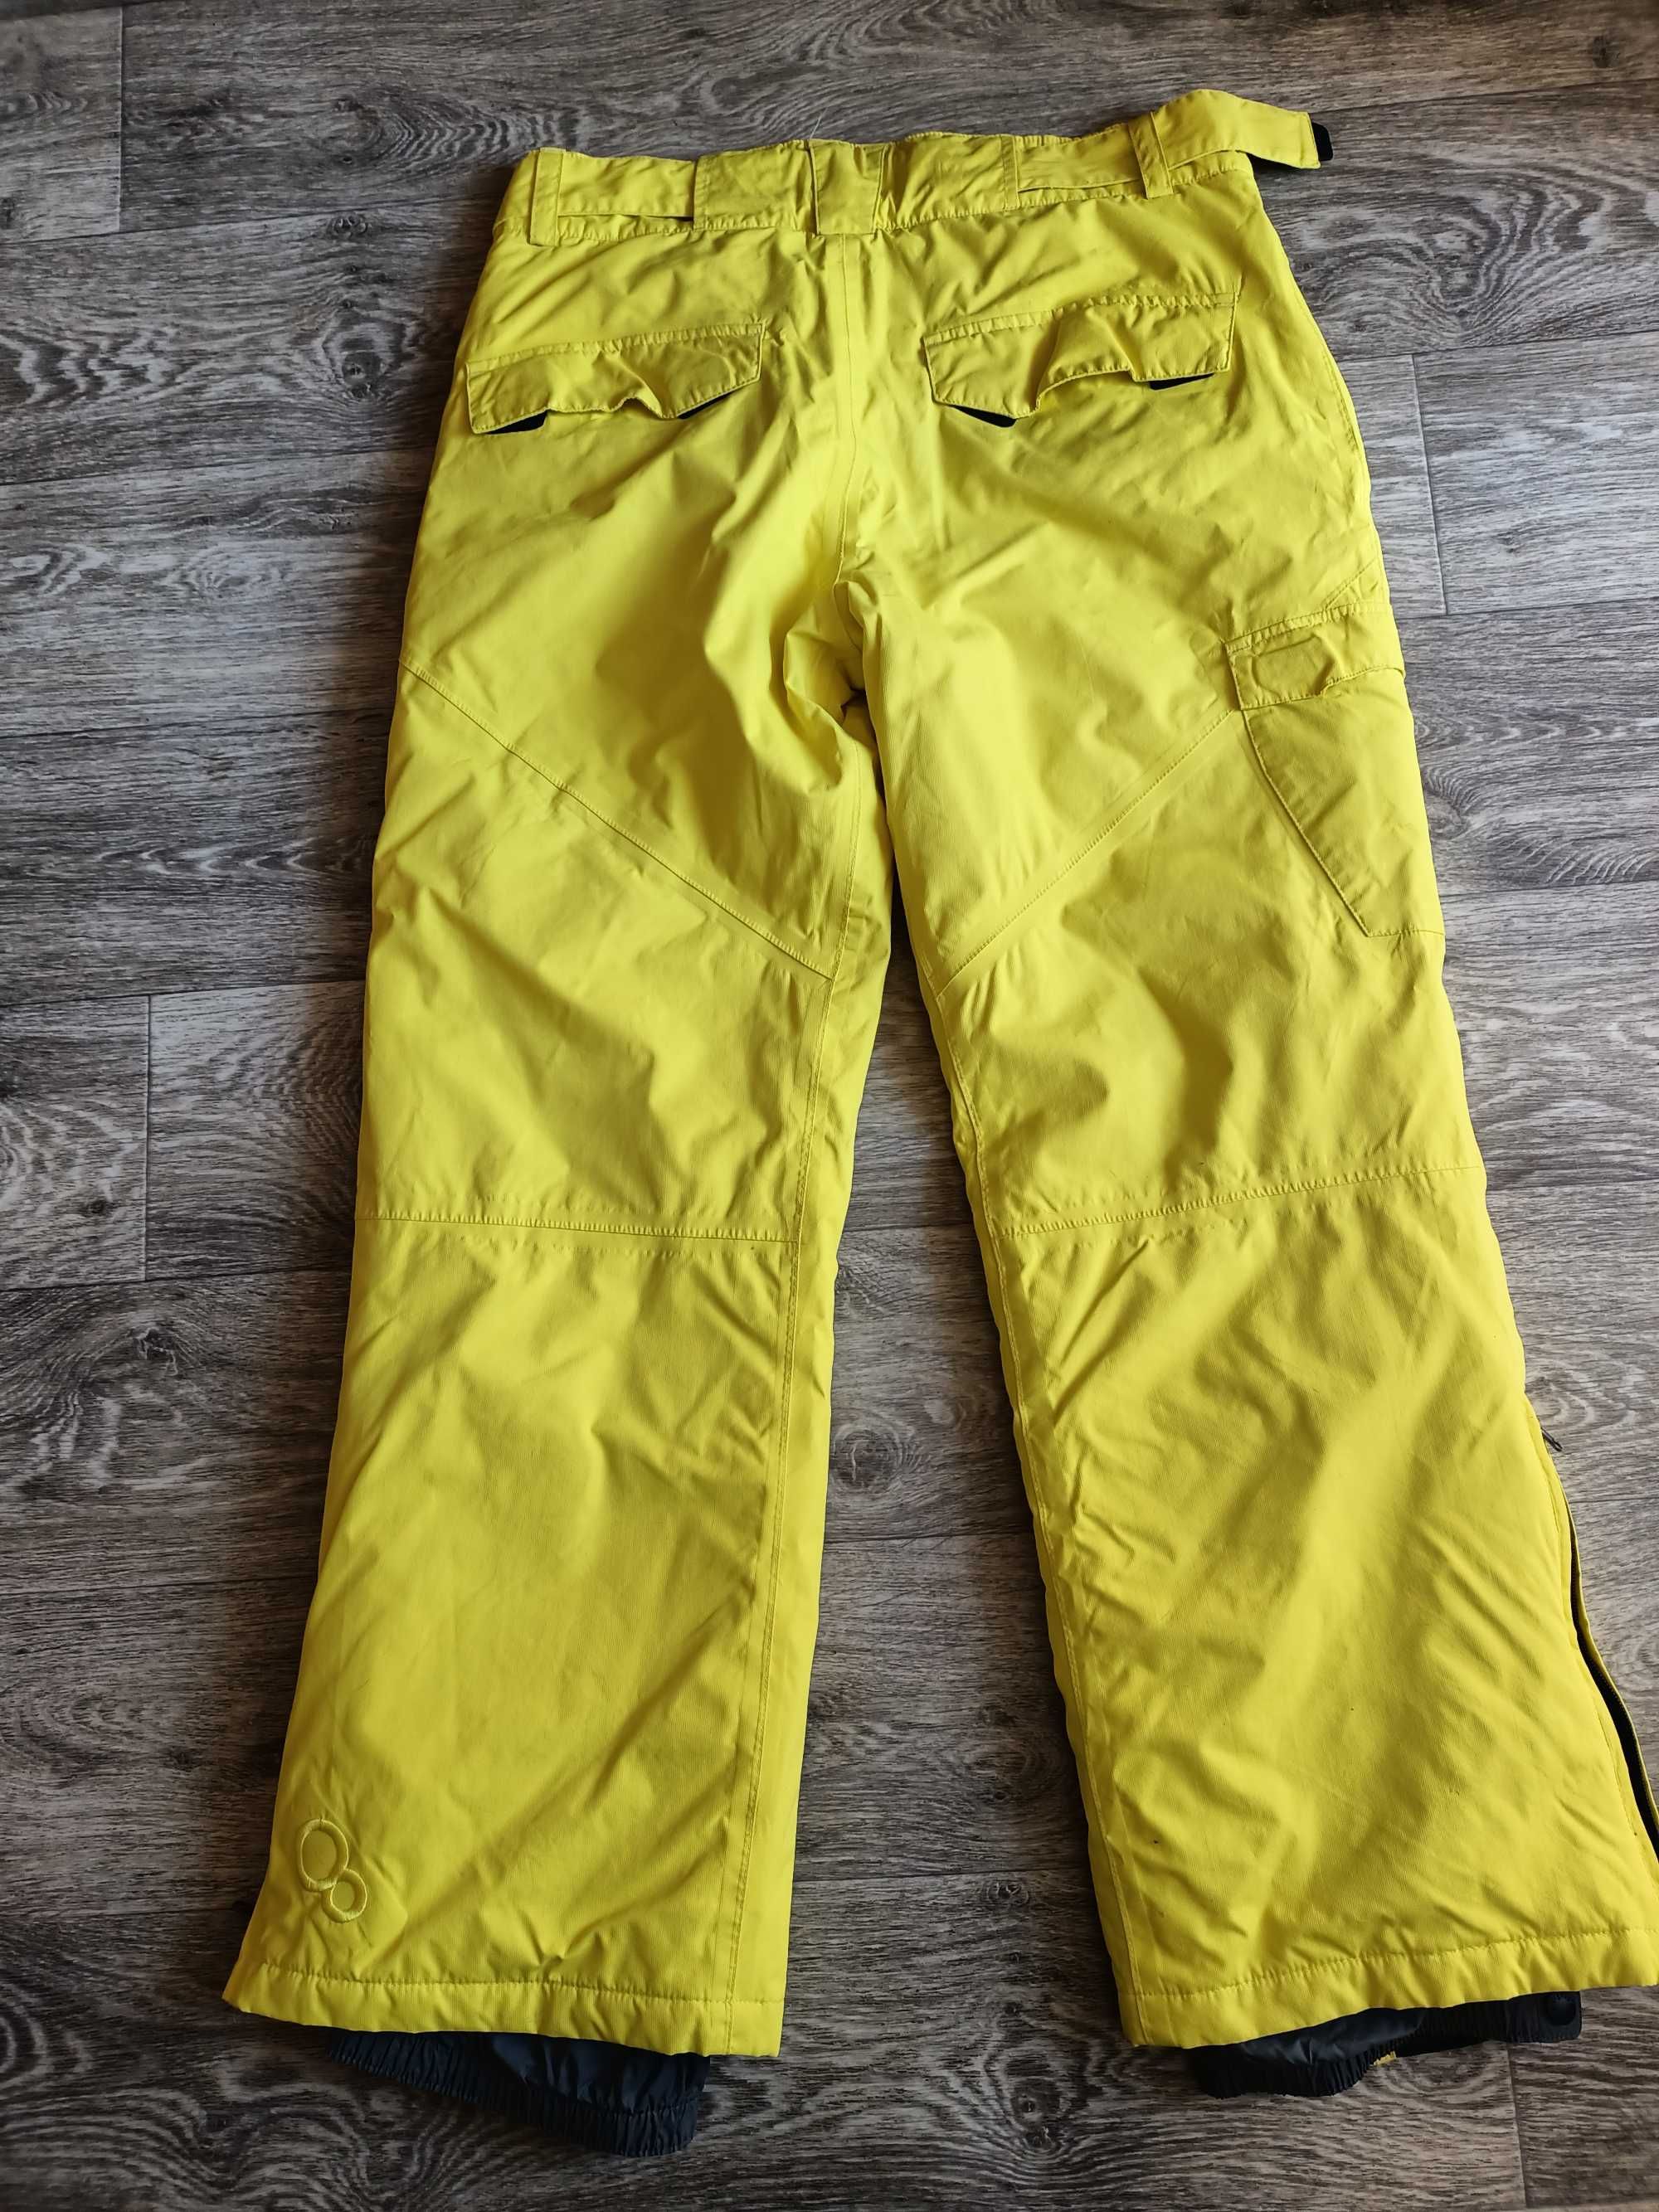 Штаны лыжные L ближе к XL размер желтые мембранные зимние